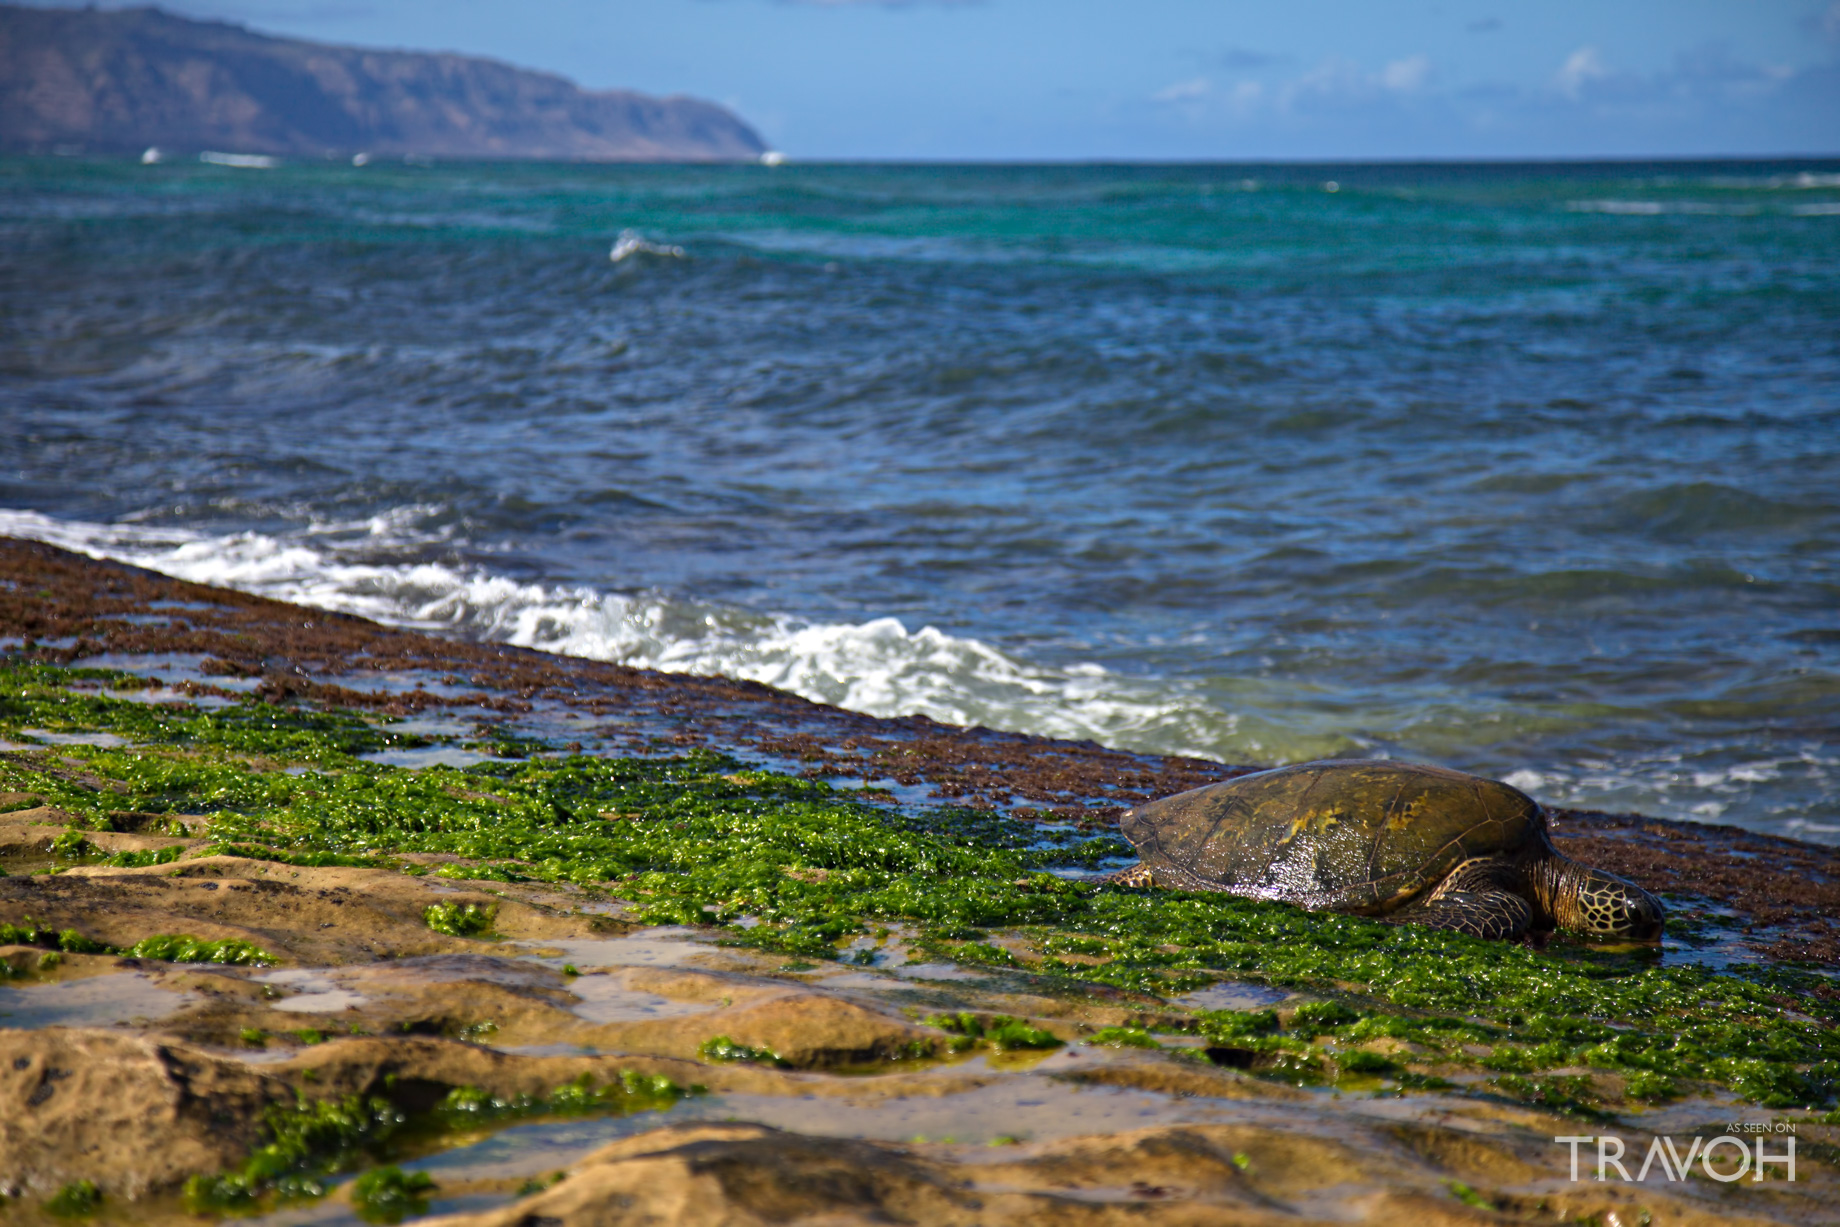 Laniakea (Turtle) Beach – Oahu, Hawaii